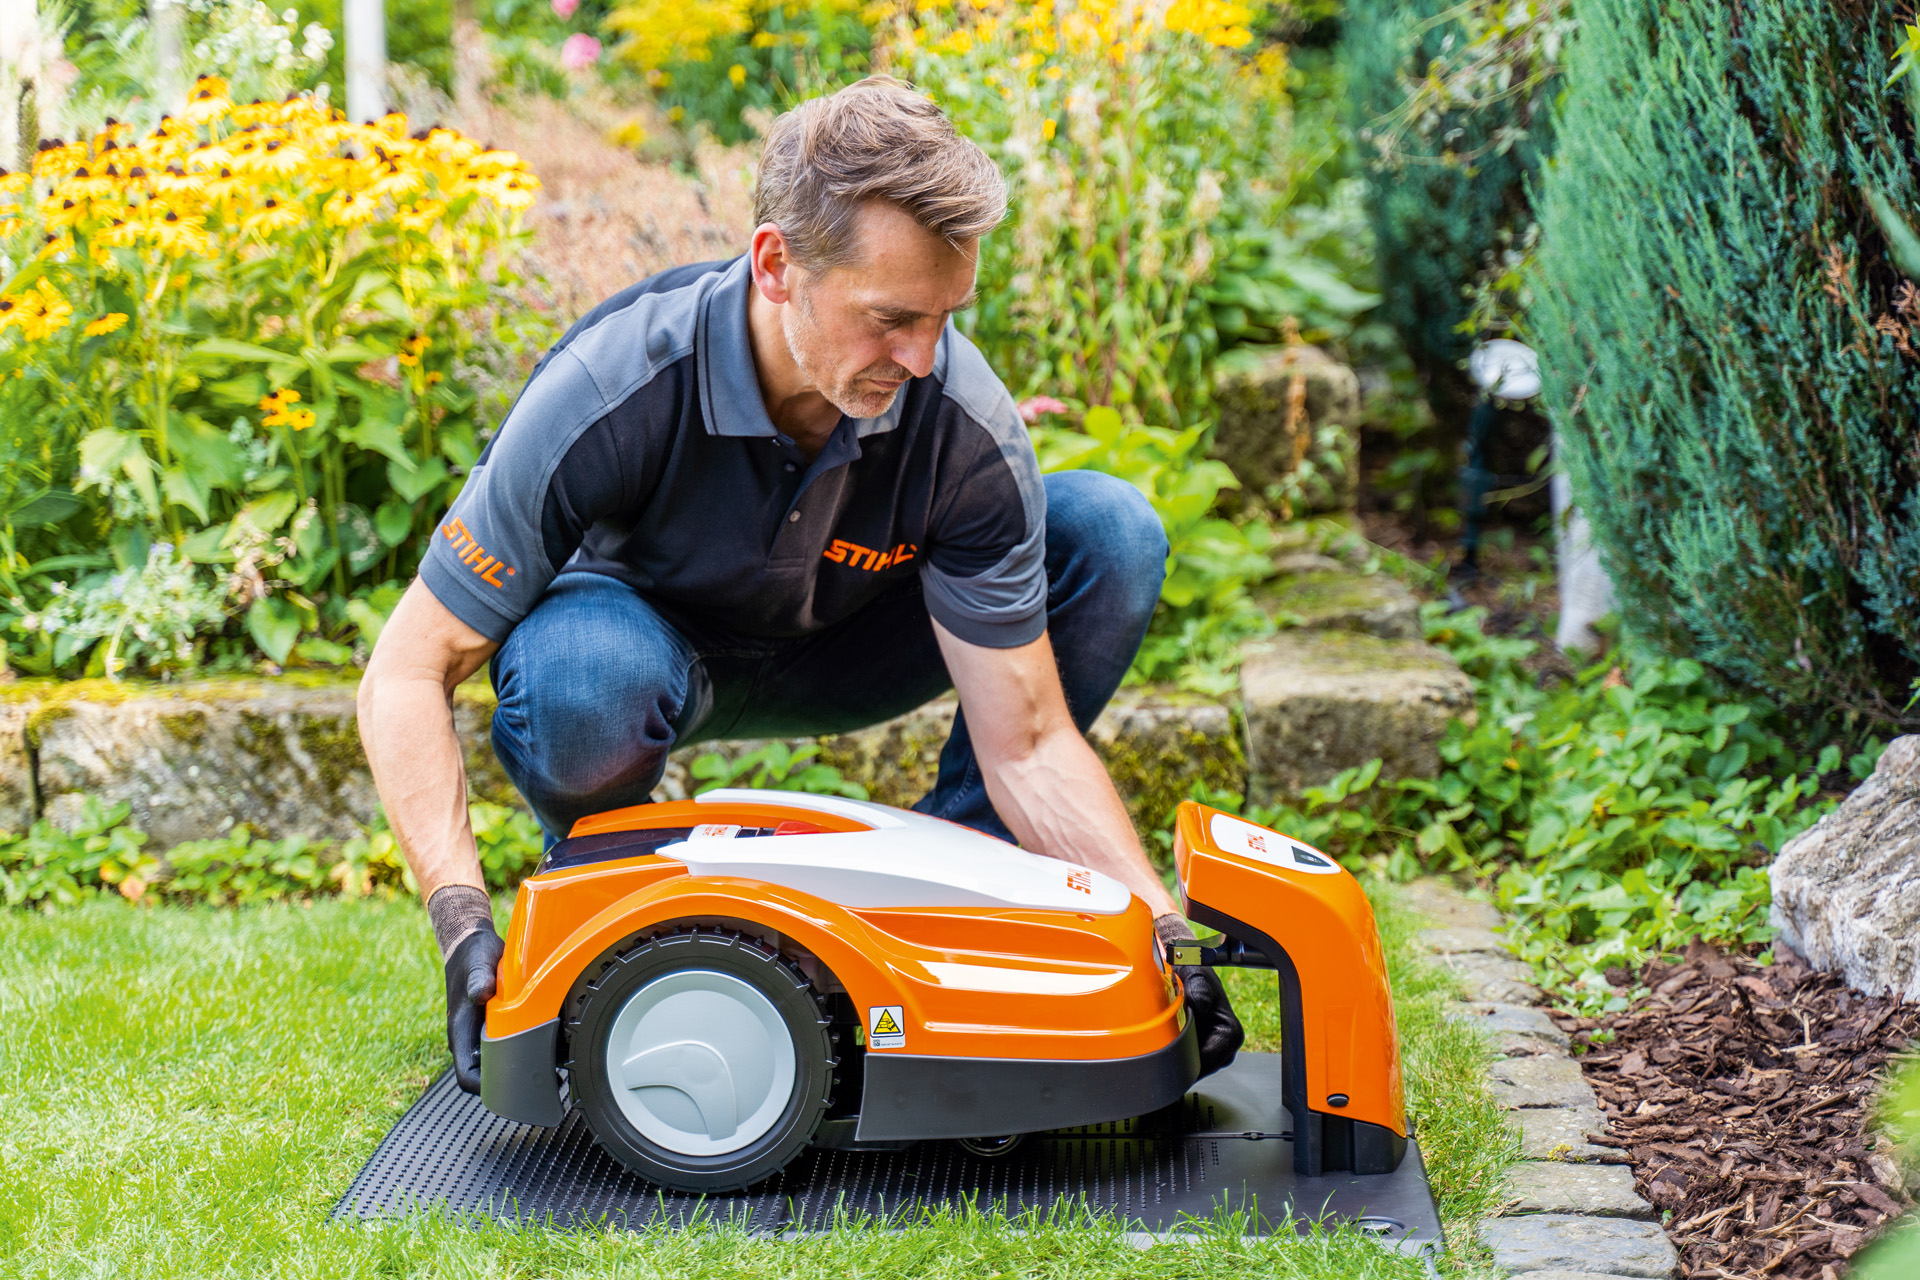 En STIHL-återförsäljare placerar en STIHL iMOW robotgräsklippare i sin laddstation i en trädgård